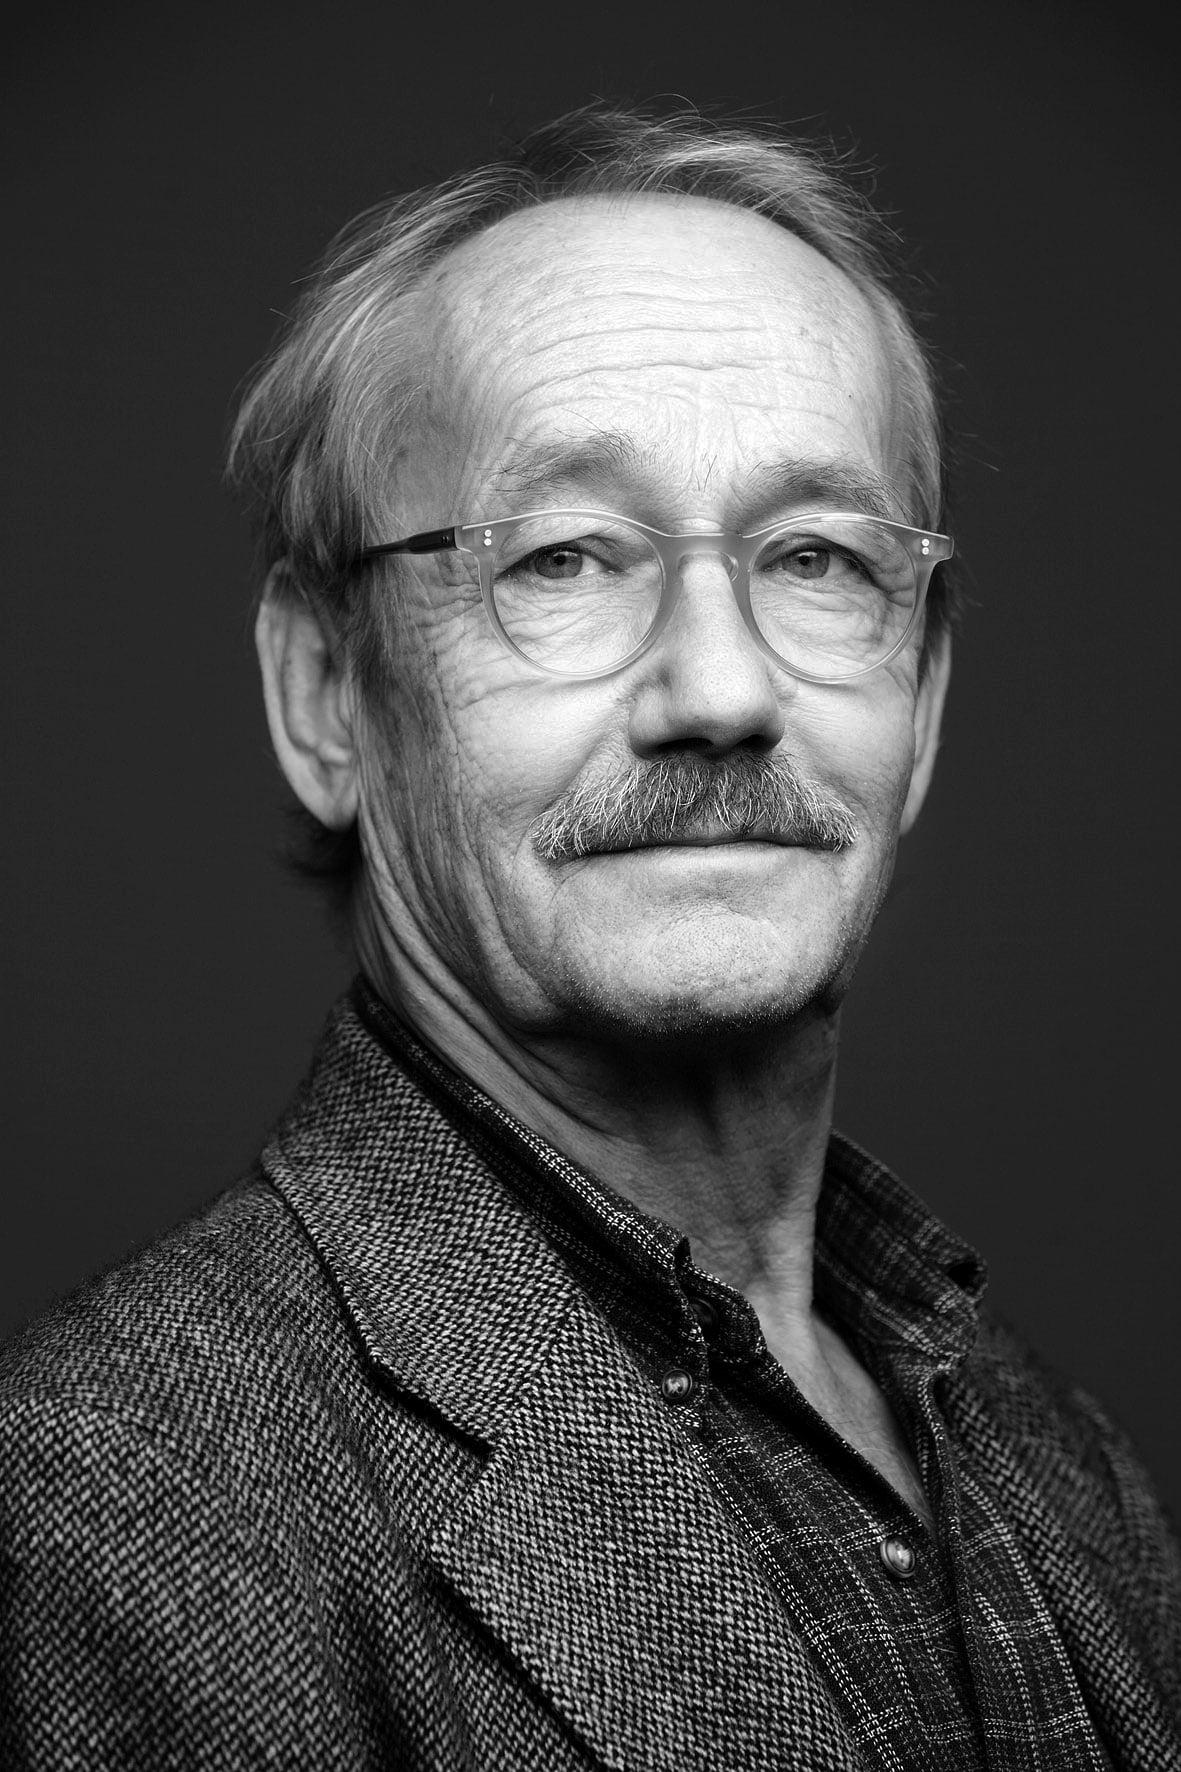 Gösta Ekman | John Smith, Police chief of Säpo